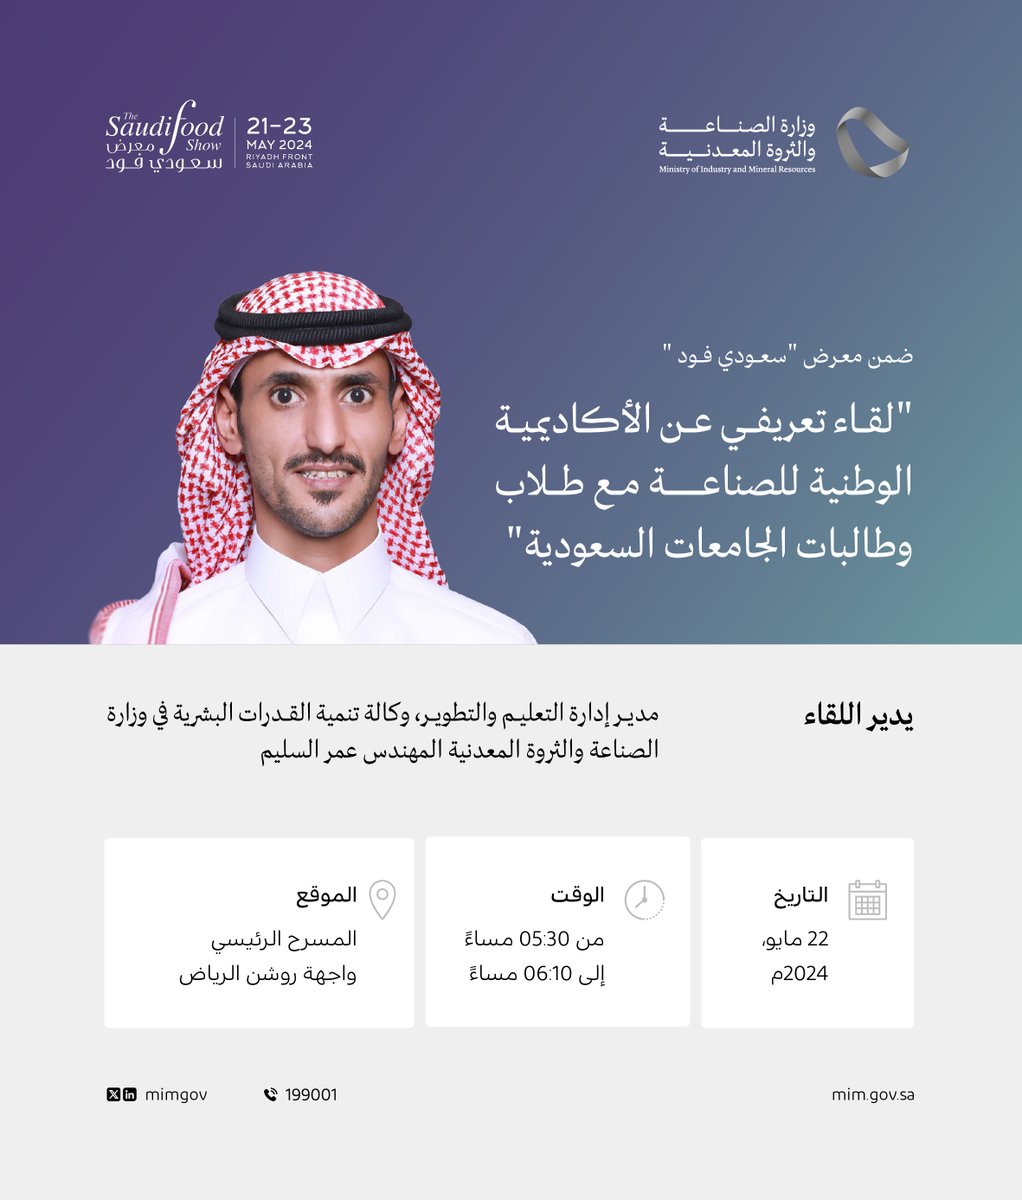 تنظم وزارة #الصناعة_والثروة_المعدنية 'لقاءً تعريفيًا عن #الأكاديمية_الوطنية_للصناعة'، مع طلاب وطالبات الجامعات السعودية، وذلك ضمن فعاليات #سعودي_فود_شو.